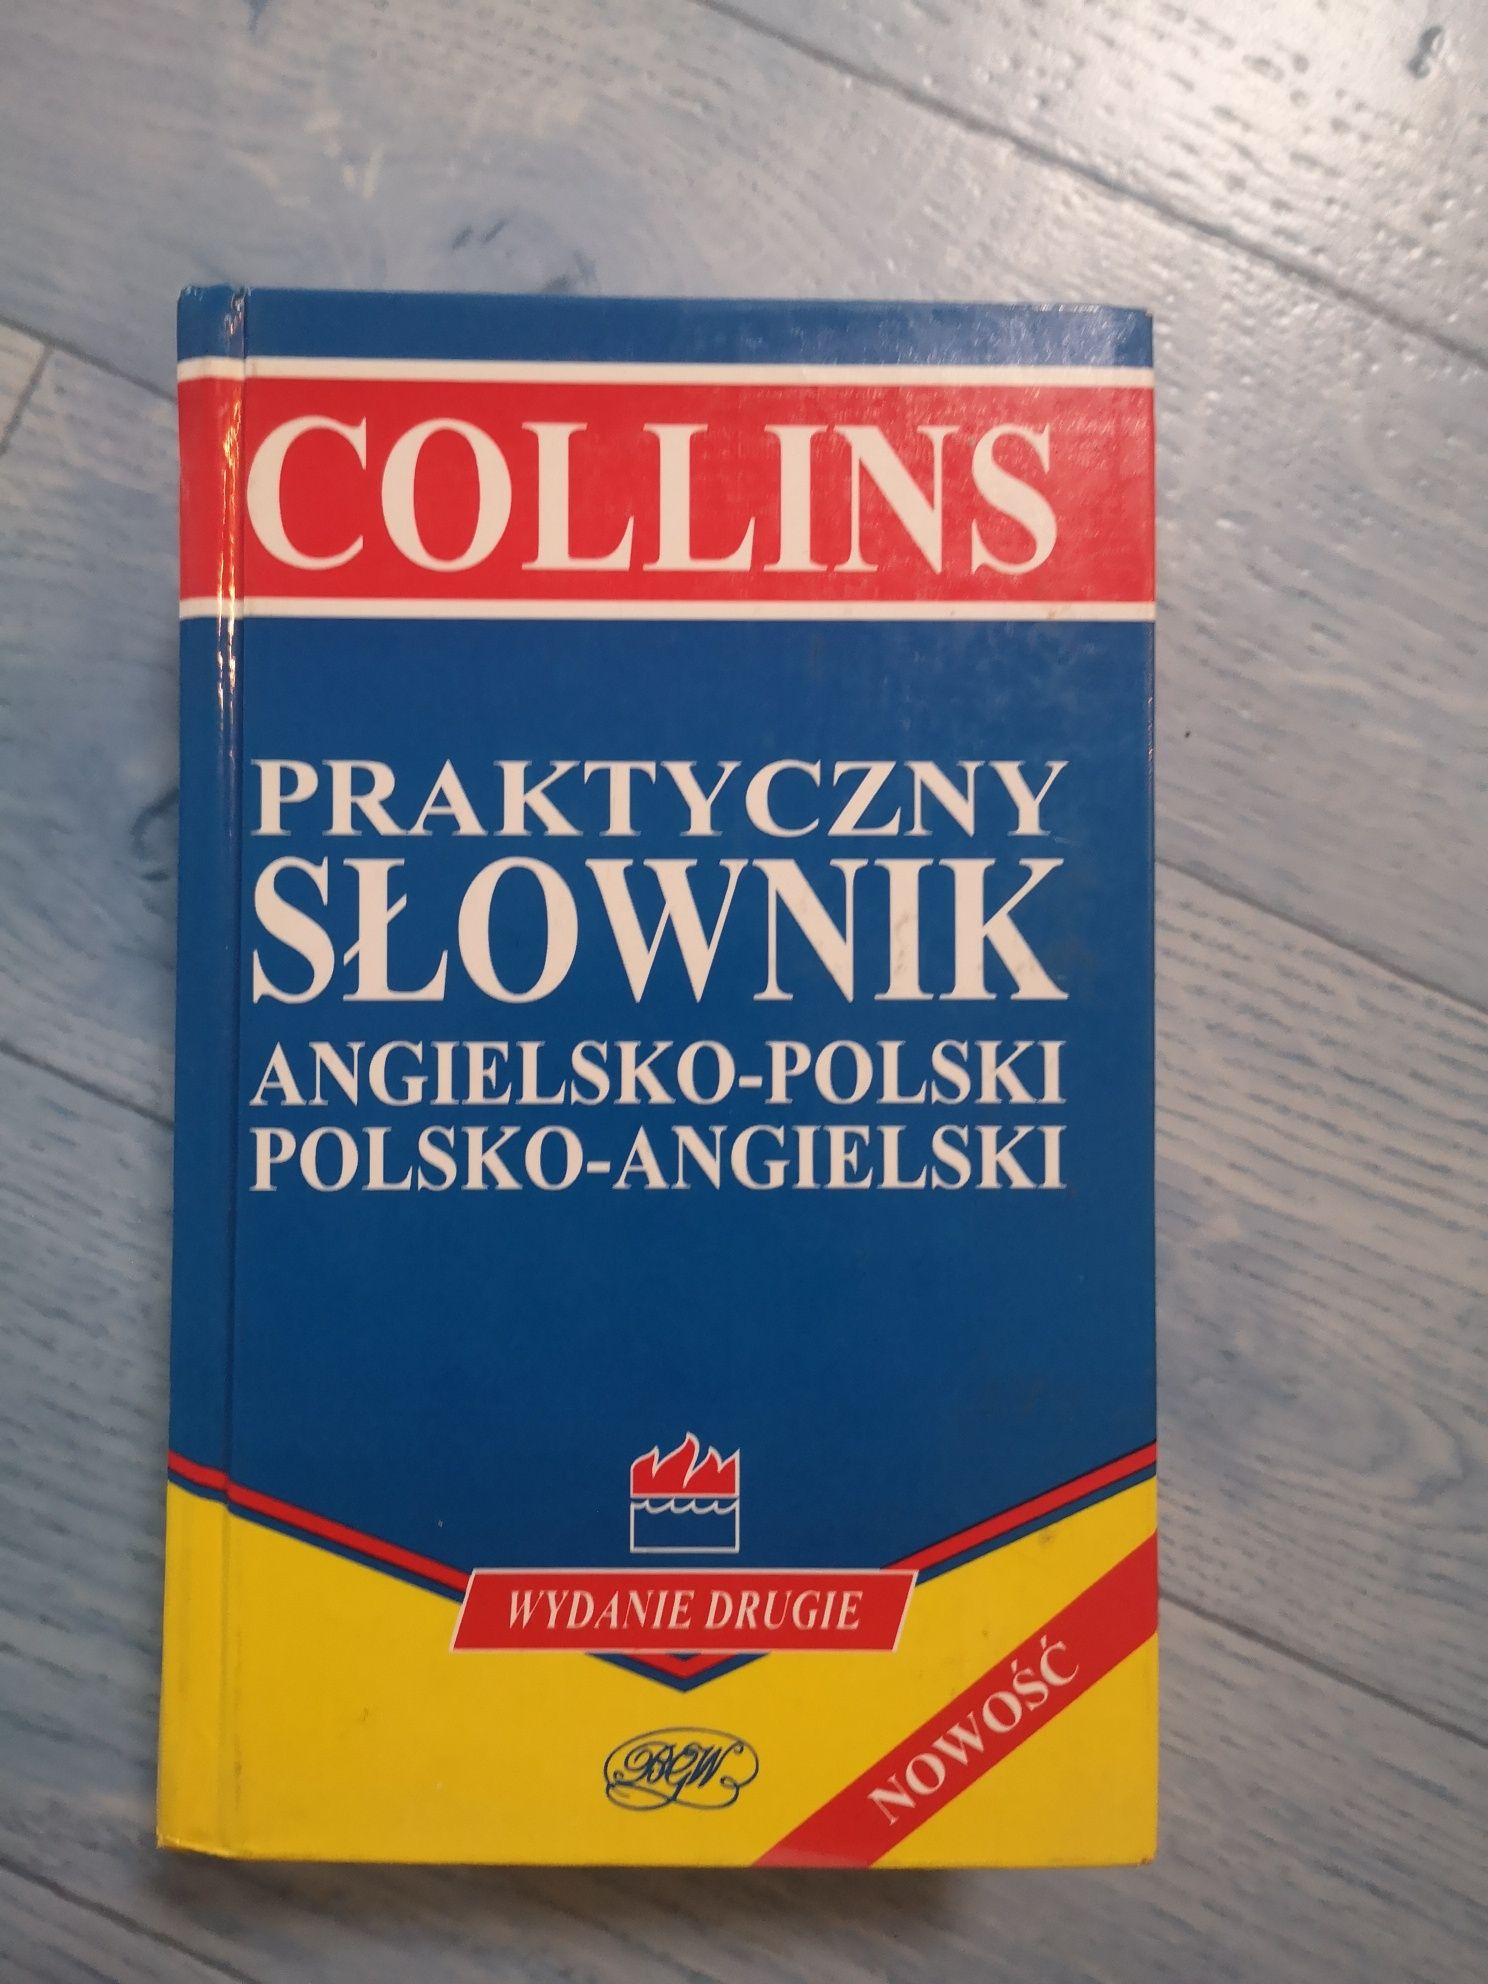 Collins praktyczny słownik angielsko-polski i polsko-angielski